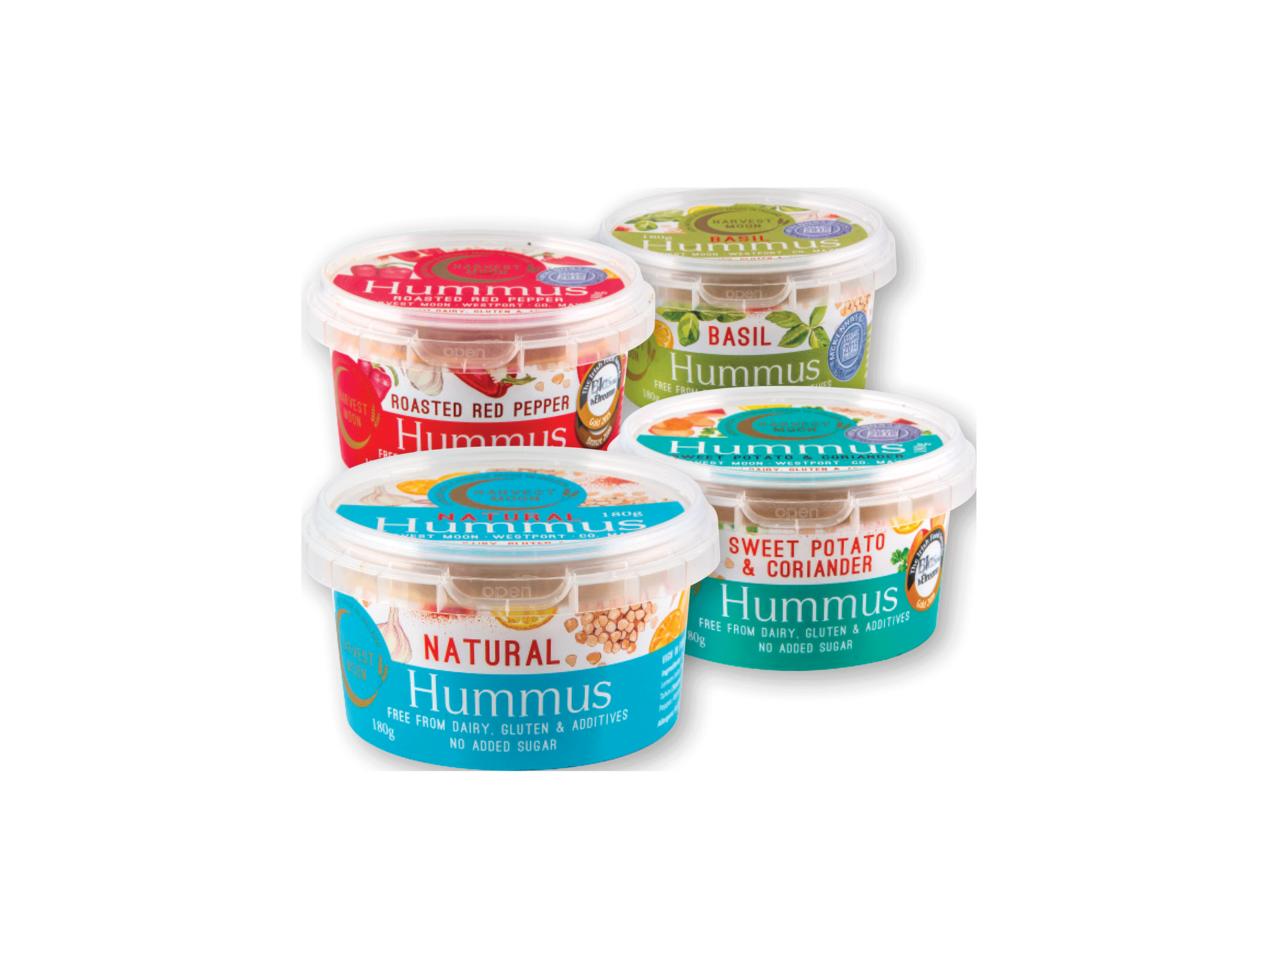 HARVEST MOON Hummus